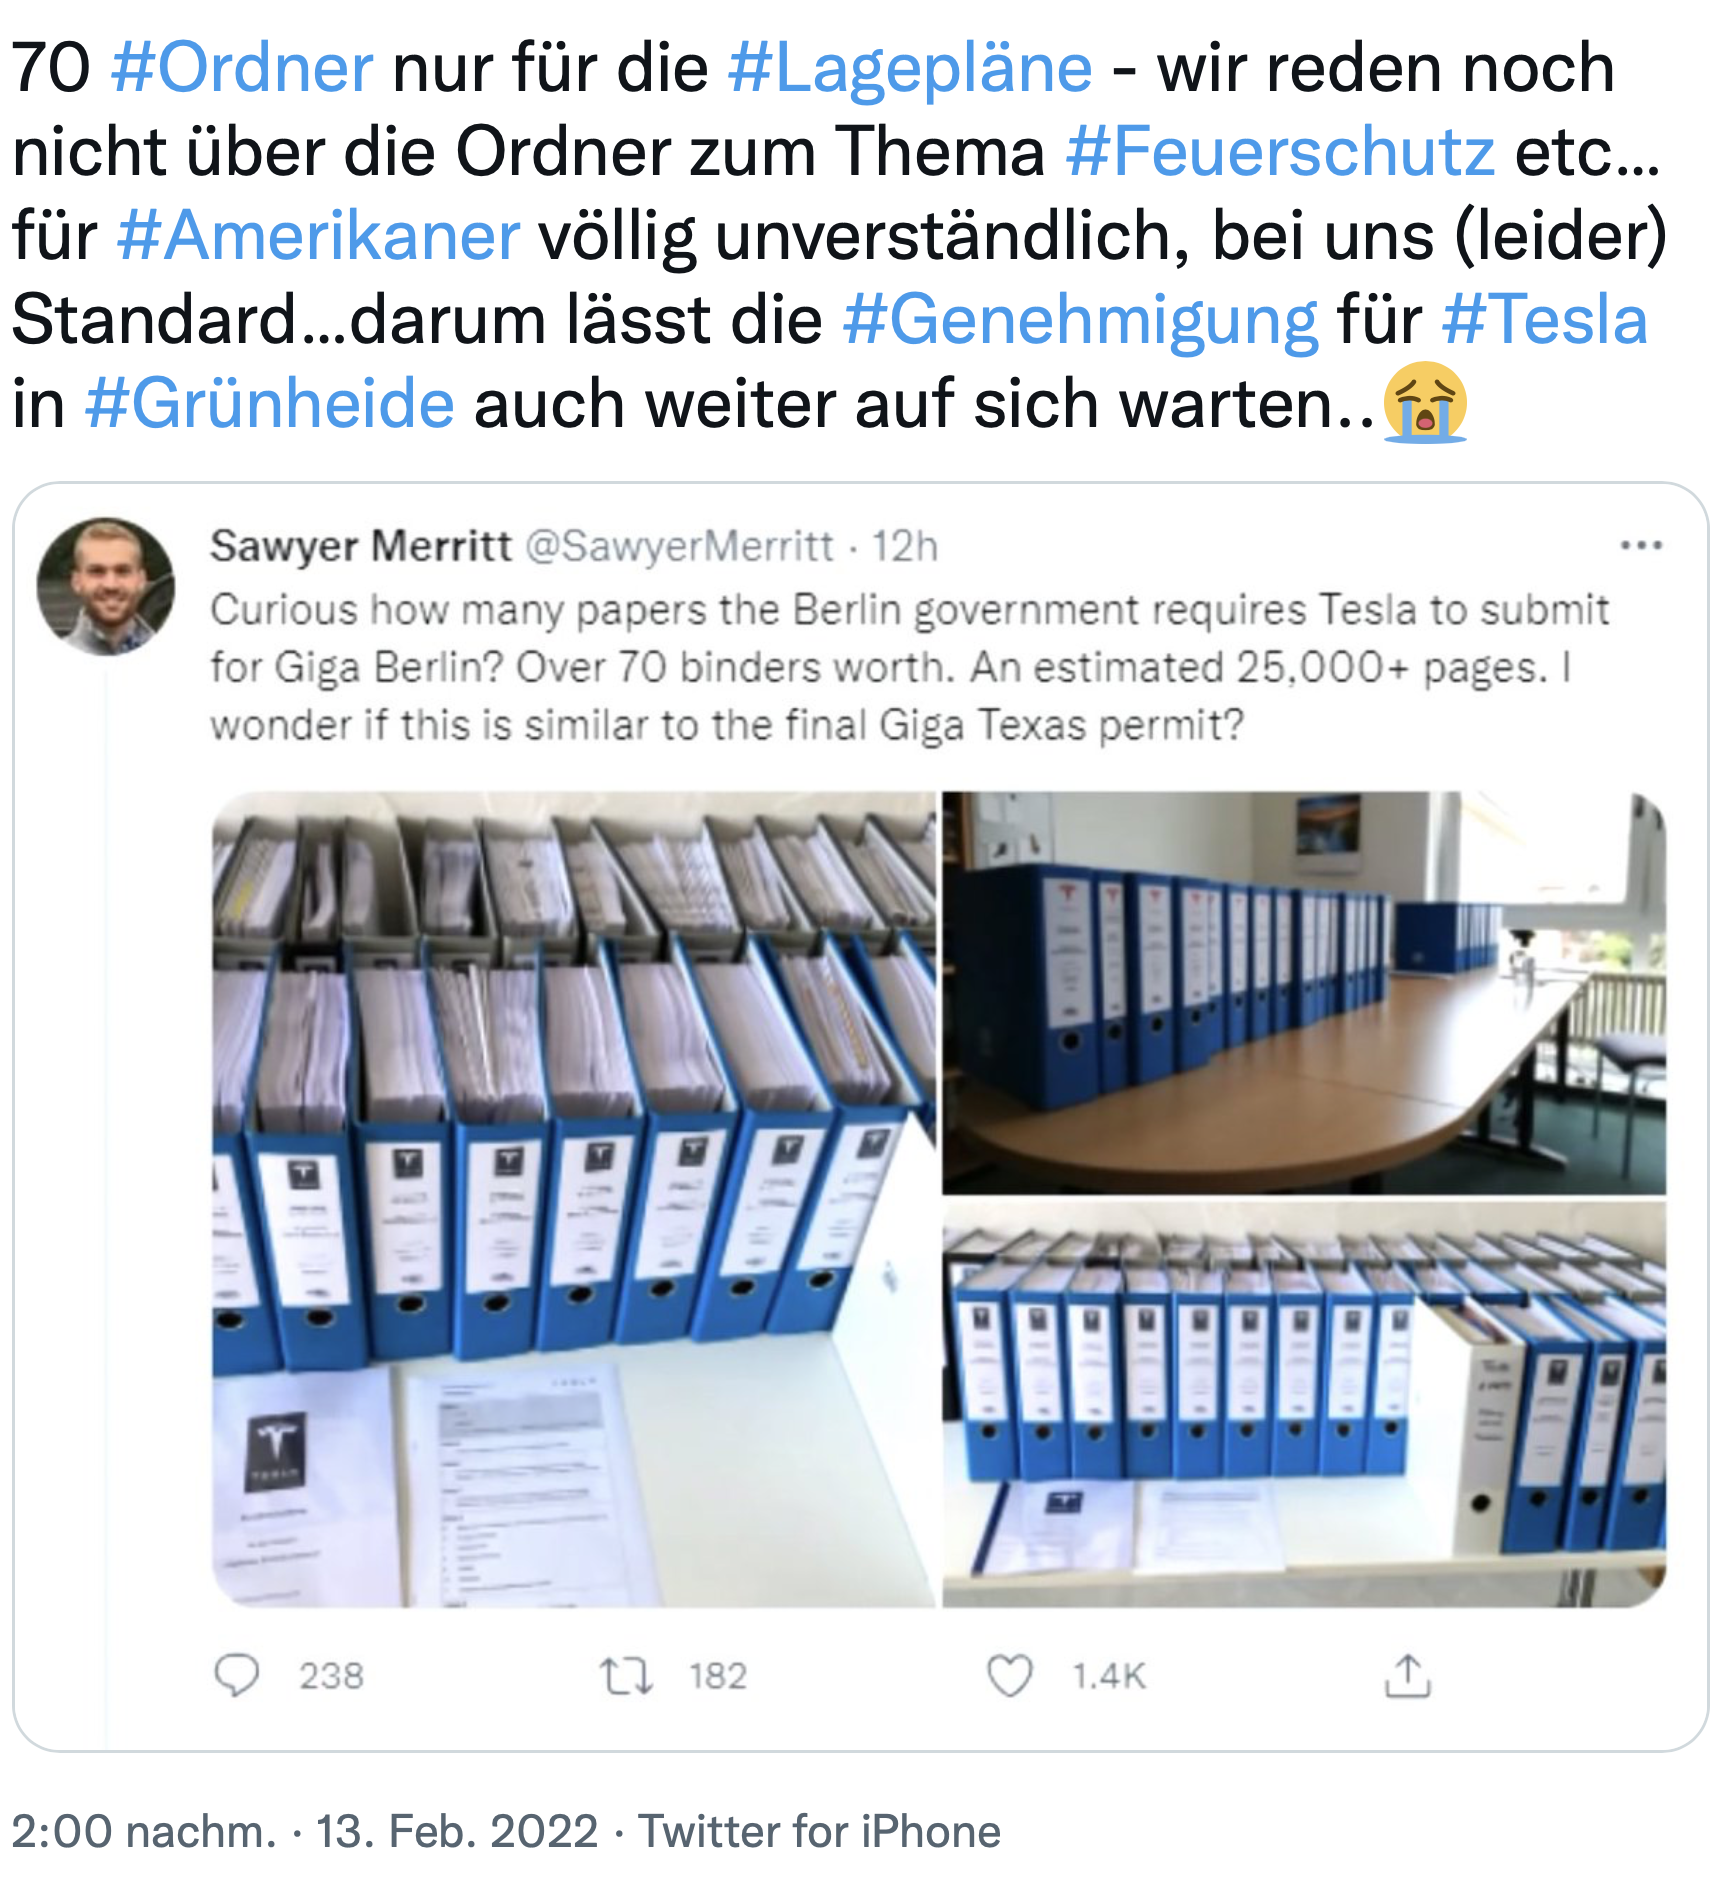 International löst die Bürokratie um Tesla in Grünheide eher Kopfschütteln aus - und wird auch in Deutschland diskutiert, hier auf dem persönlichen Twitter-Kanal von KOMMUNAL-Chefredakteur Christian Erhardt